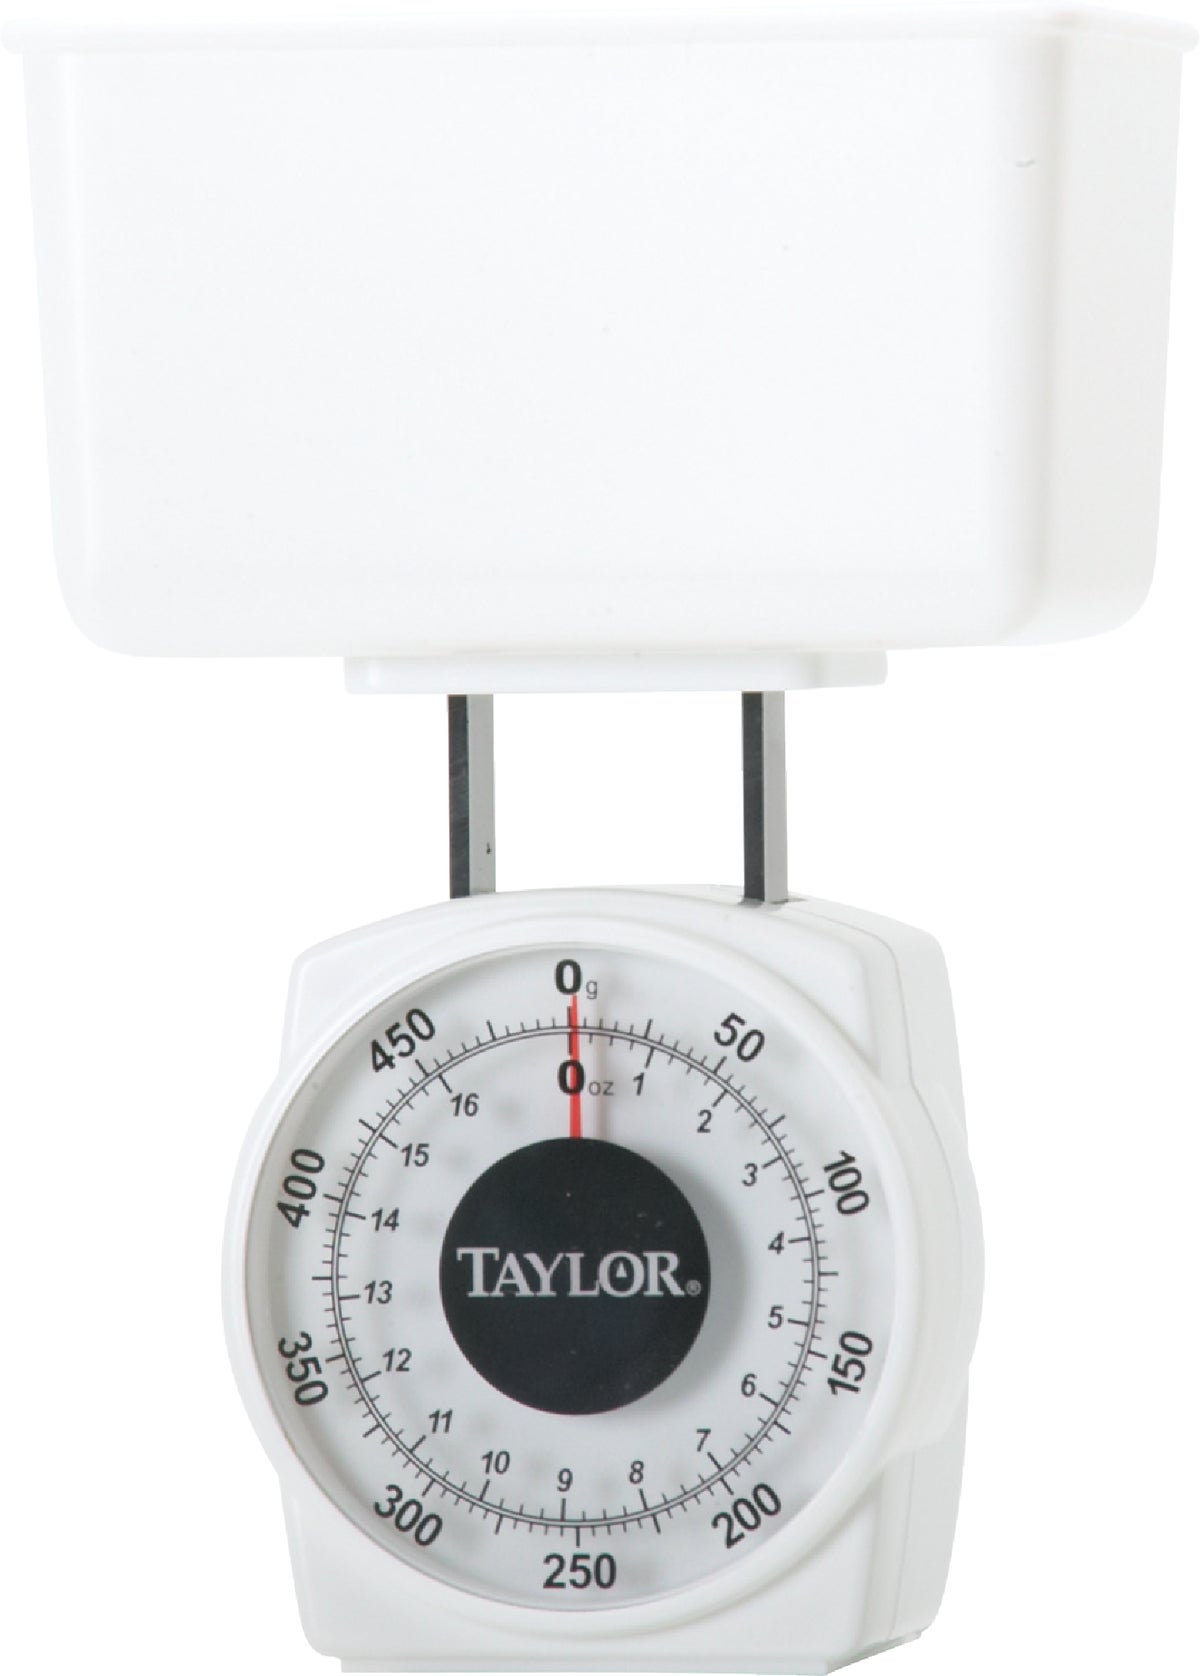 Taylor Waterproof Digital Kitchen & Food Scale - 11 lb 5273823